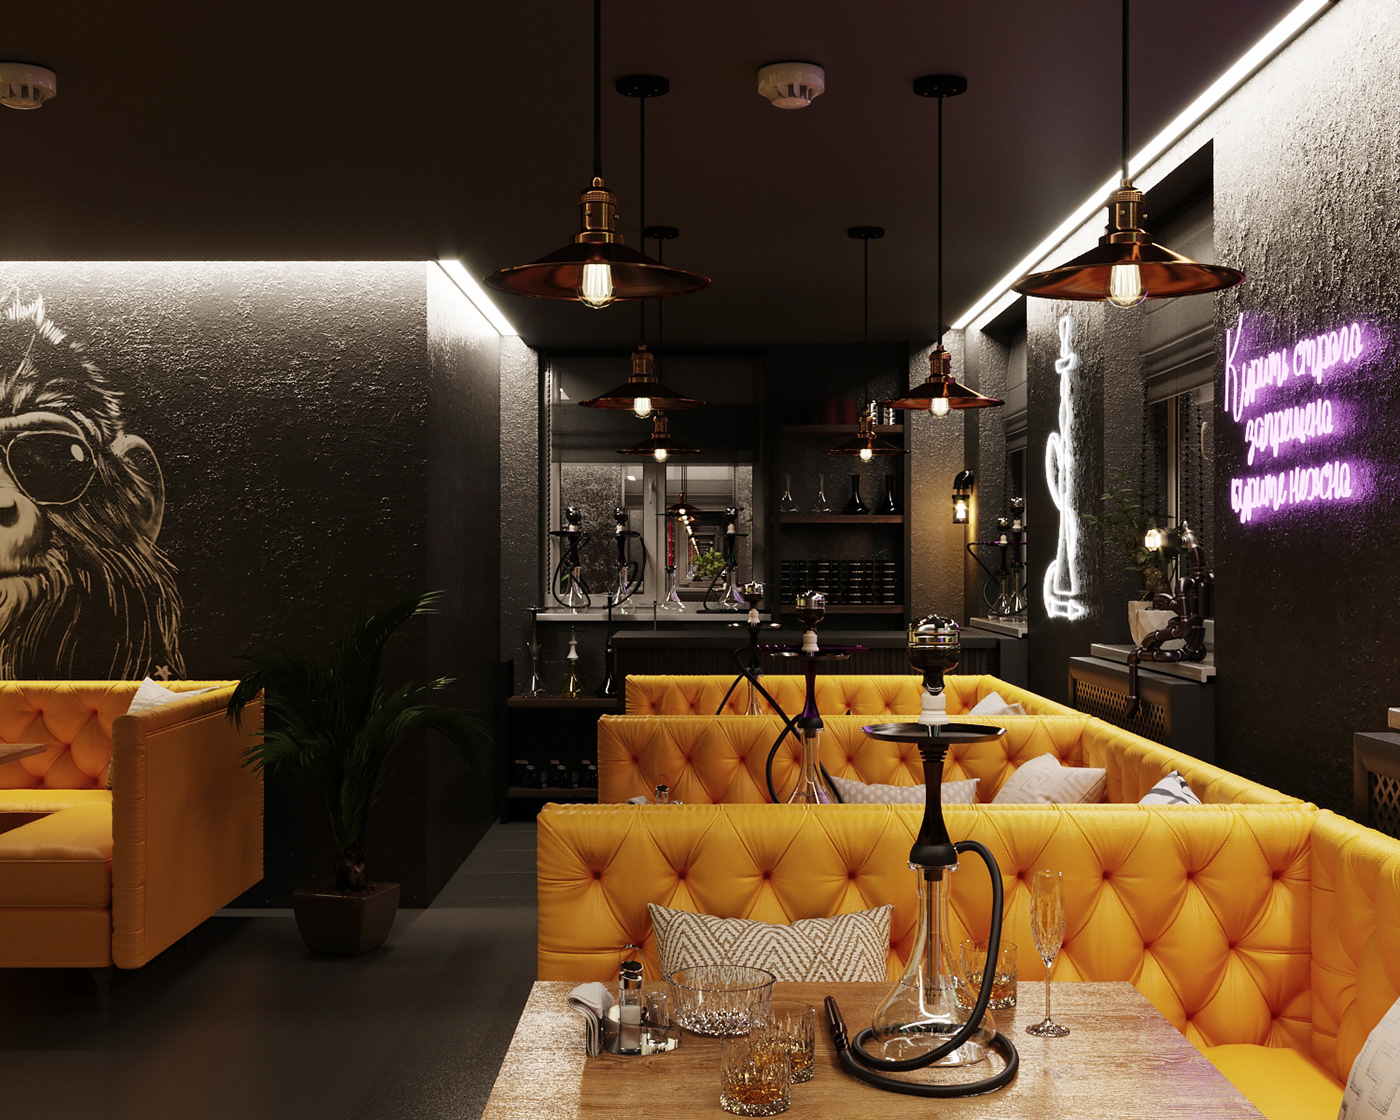 3ds max corona render  interior design  visualization